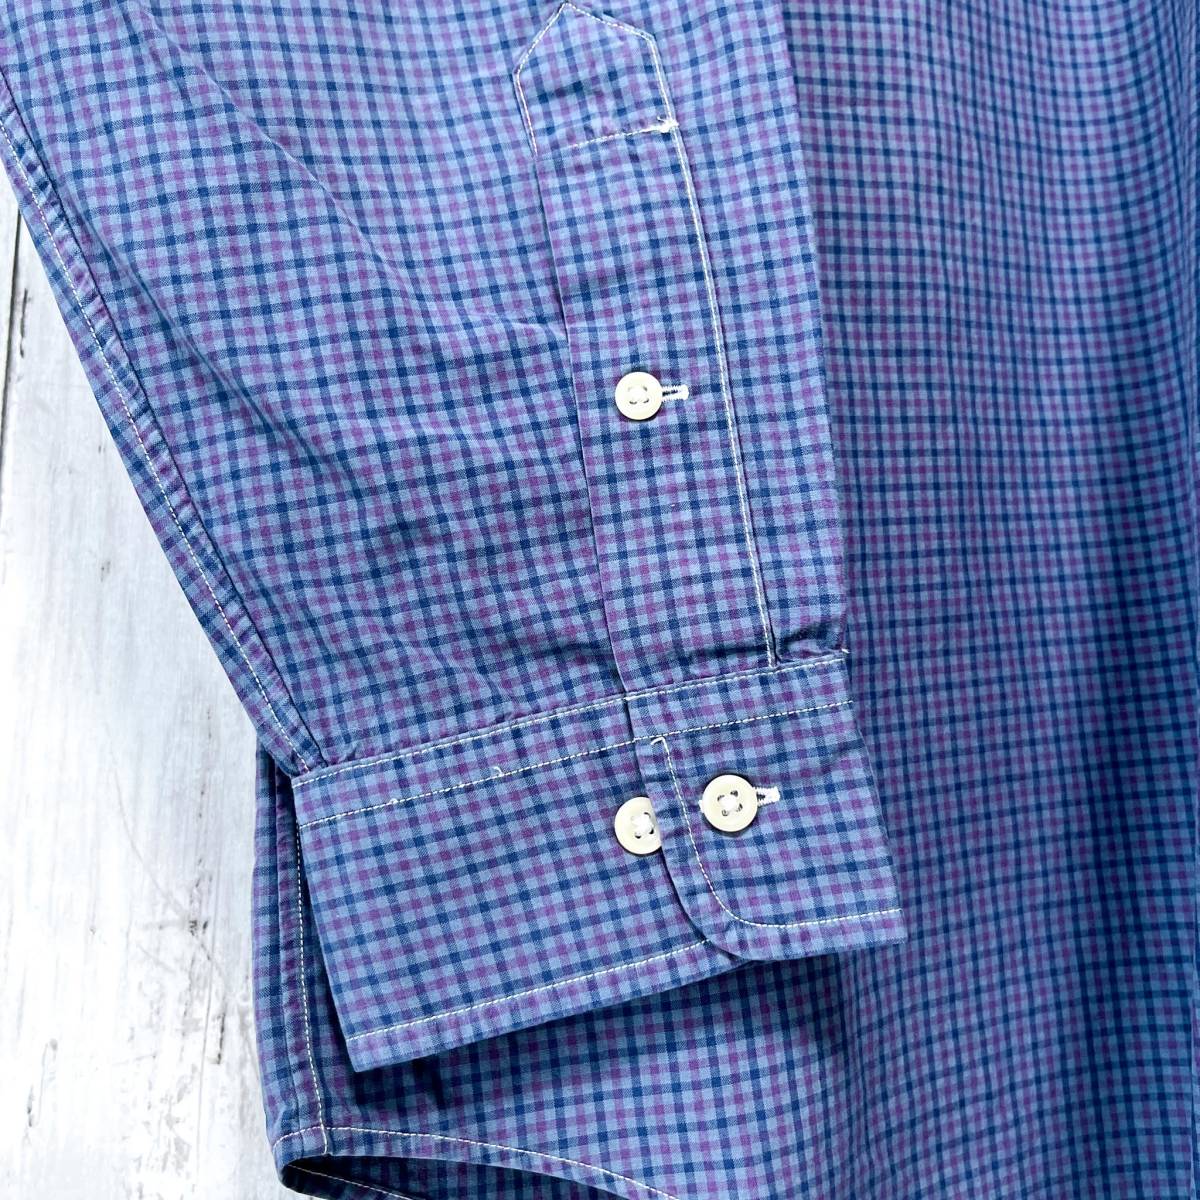 ラルフローレン Ralph Lauren チェックシャツ 長袖シャツ メンズ ワンポイント サイズ16 Lサイズ 2-477